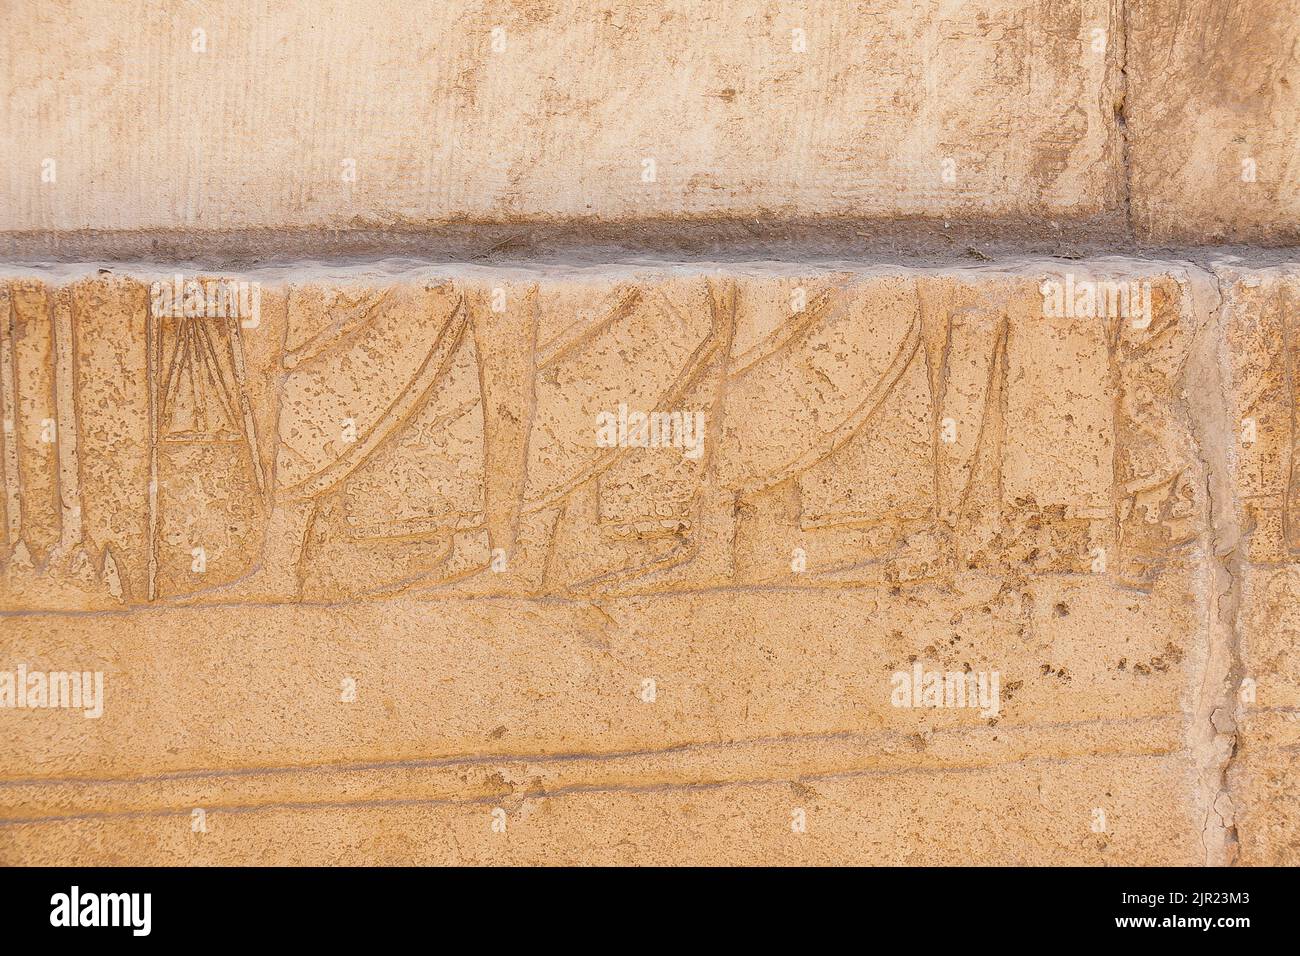 Égypte, Saqqara, tombeau du Nouveau Royaume de Horemheb, mur sud de la deuxième cour : pieds des peuples asiatiques. Banque D'Images